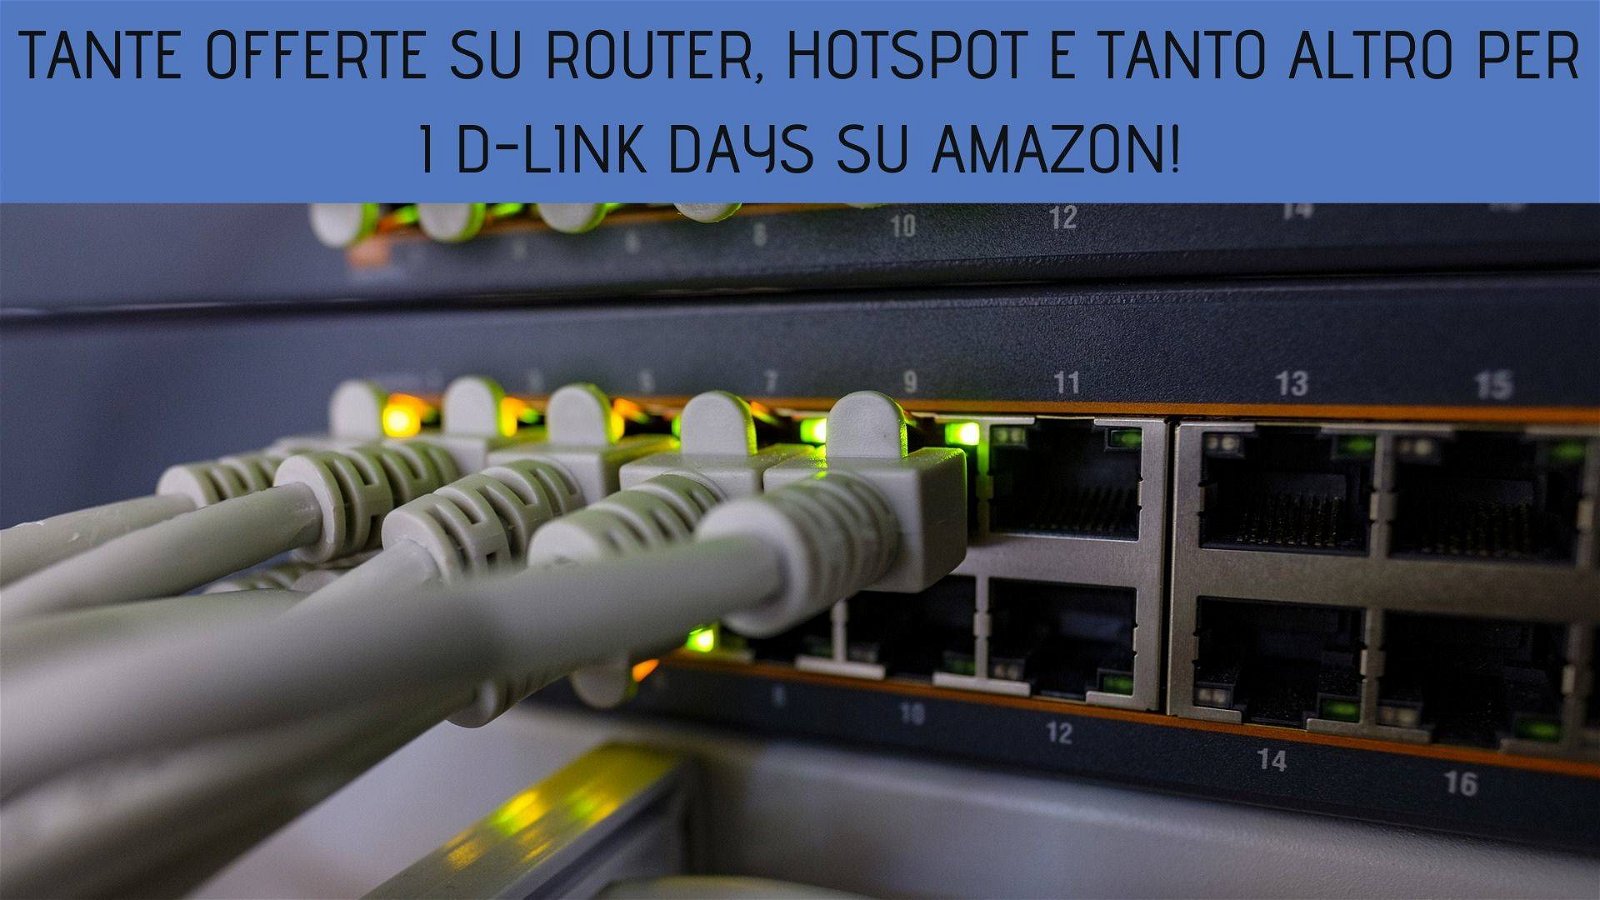 Immagine di Tante offerte su router, hotspot e tanto altro per i D-Link Days su Amazon!